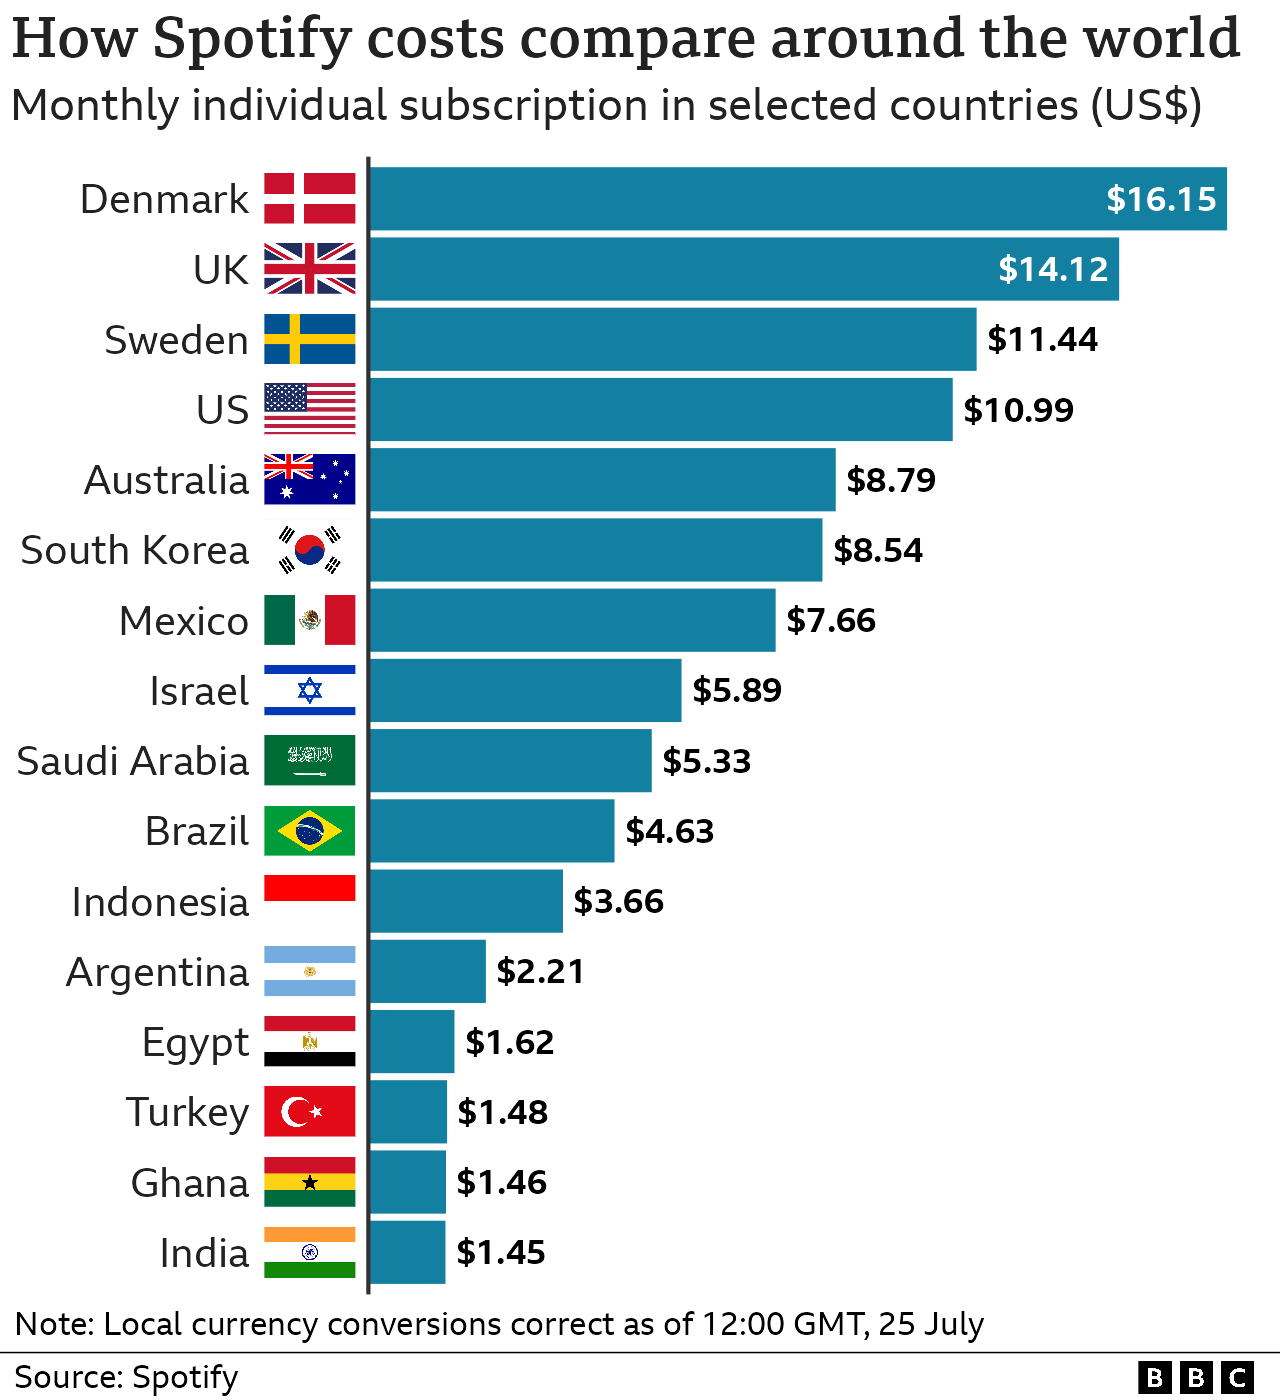 Гистограмма, показывающая стоимость отдельной подписки Spotify в выбранных странах мира. Цены сильно различаются в зависимости от страны, в которой вы живете.Цена в долларах США: 16 долларов в Дании, 14 долларов в Великобритании, около 11 долларов в Швеции и США, около 8 долларов в Южной Корее и Мексике, 4 доллара в Индонезии и менее 2 долларов в Египте, Турции, Гане и Индии.